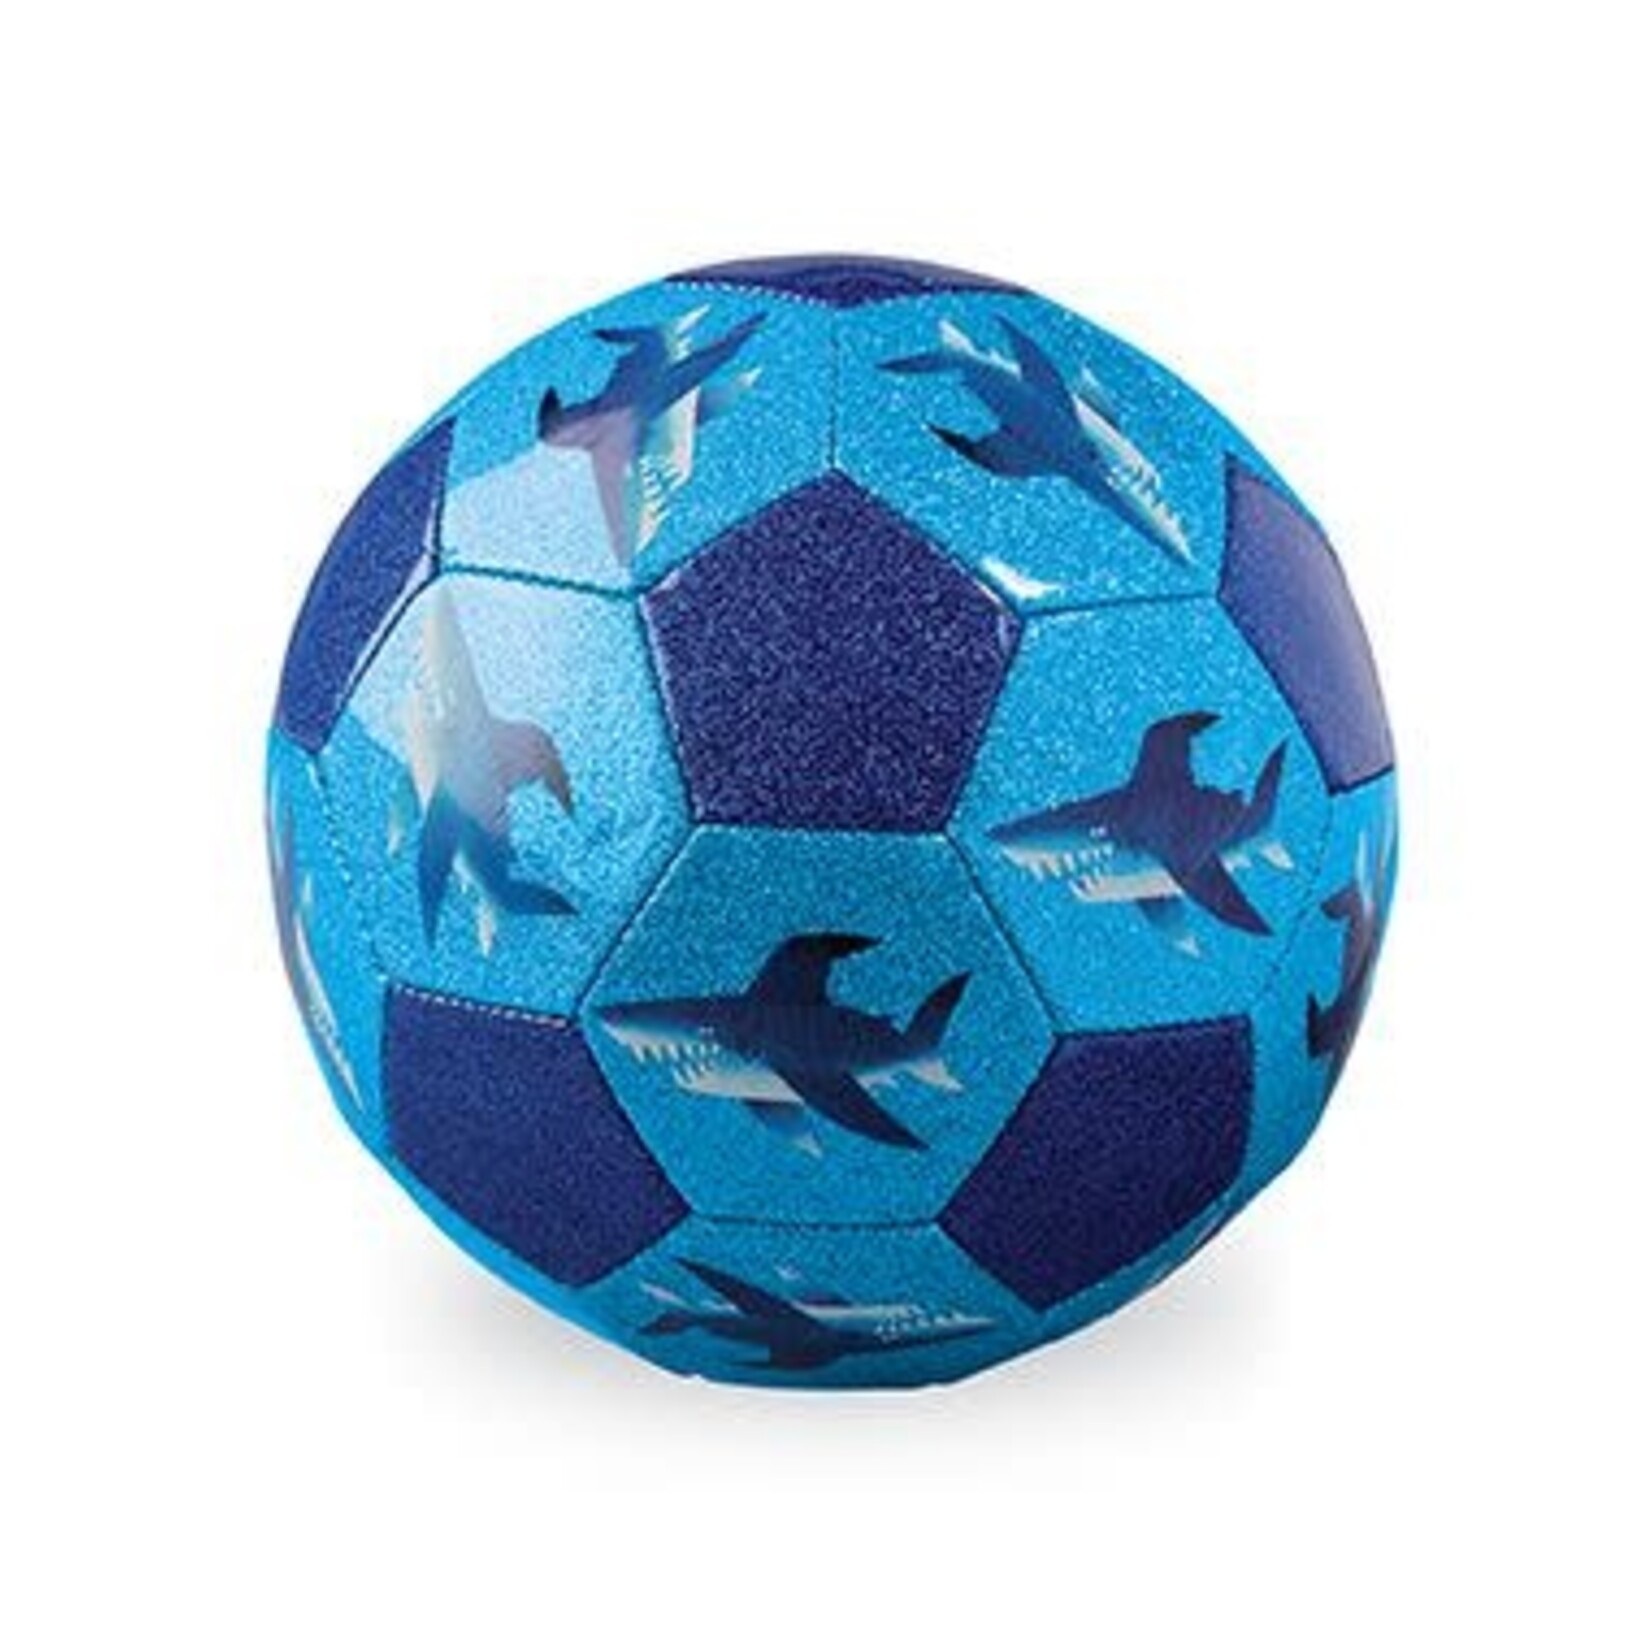 Crocodile Creek Shark City Soccer Ball - Size 3